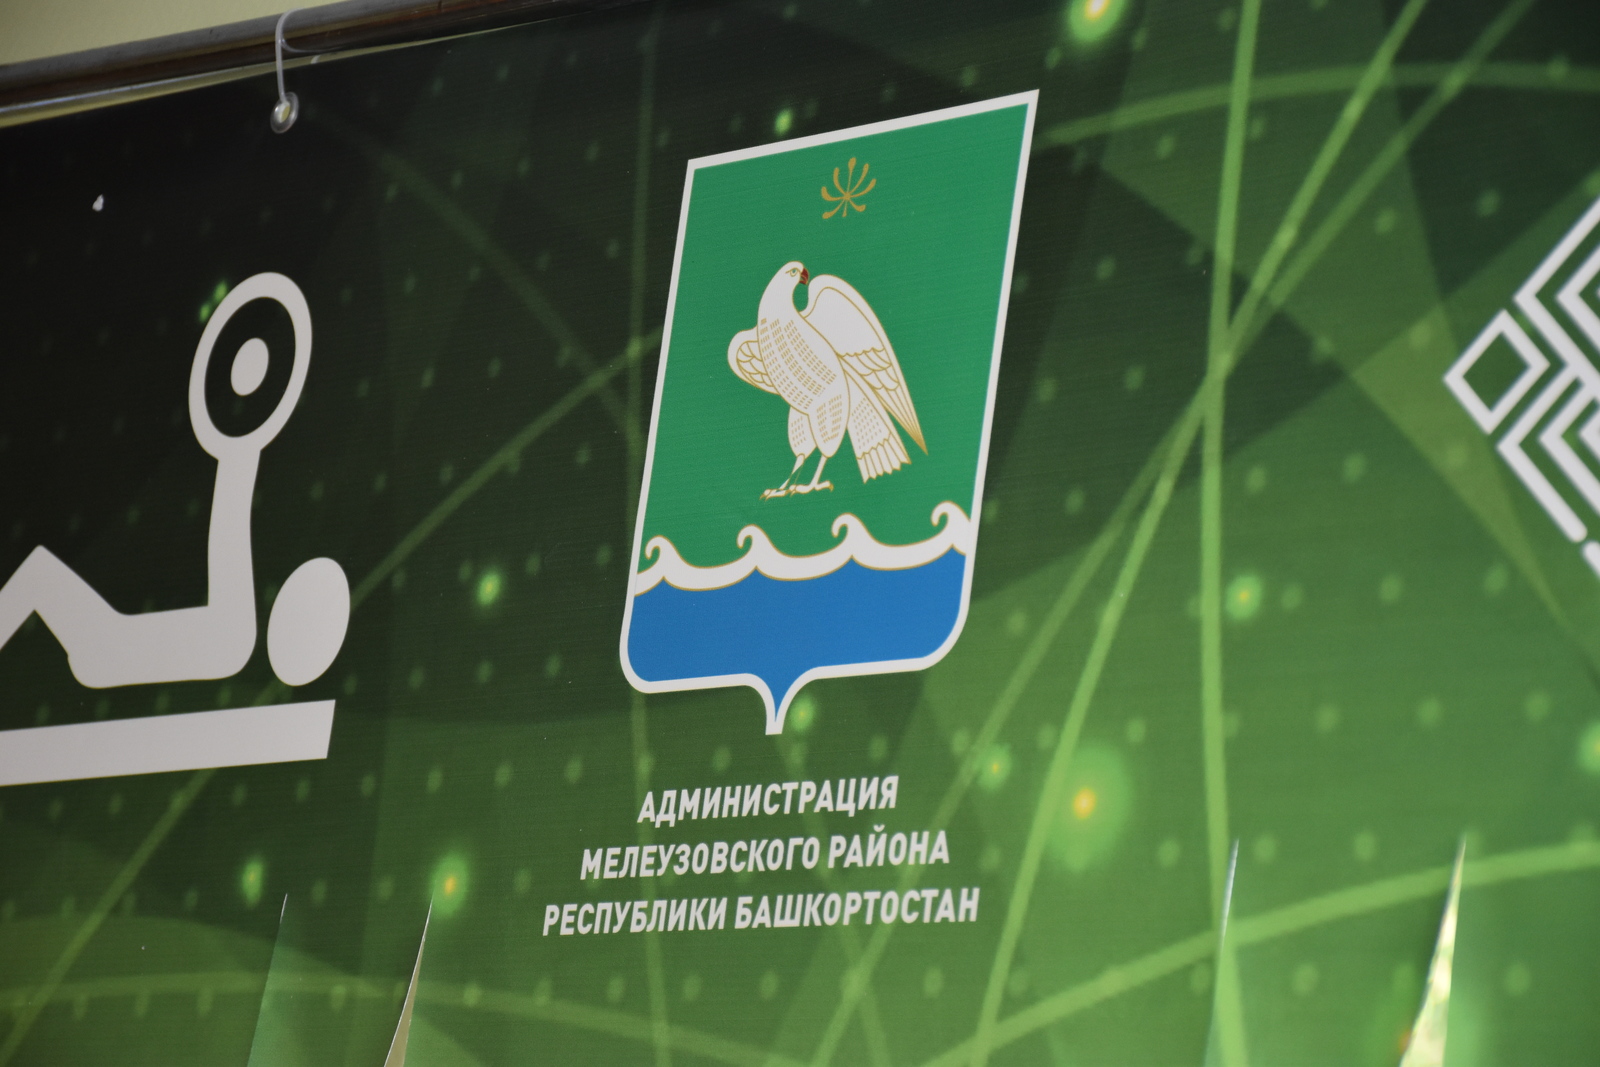 Административная комиссия Мелеузовского района предупреждает: выкинул мусор мимо контейнера - получи штраф!